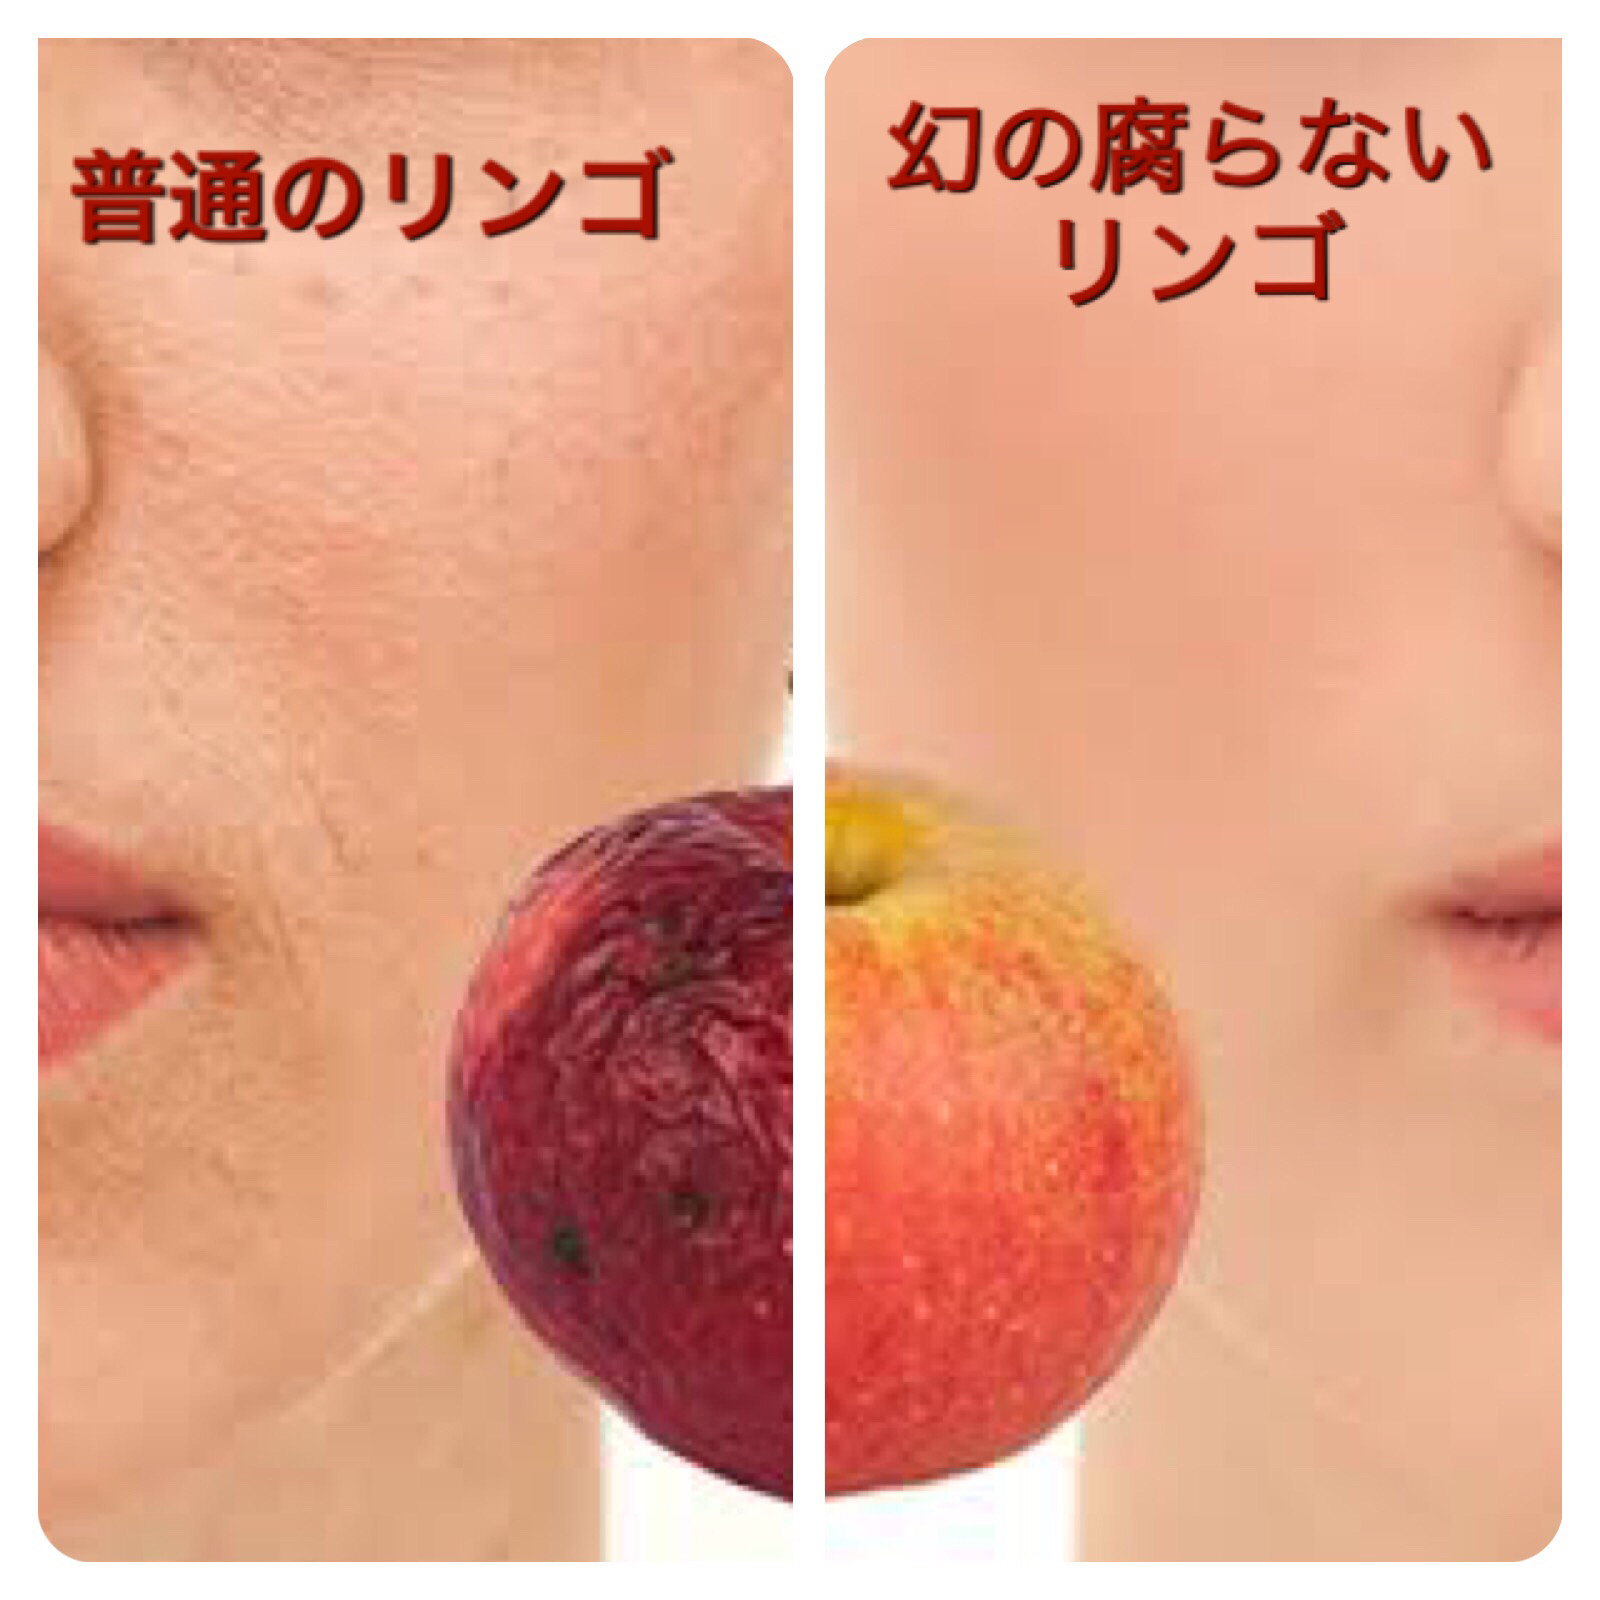 新メニュー 腐らないリンゴって お肌のお悩みおまかせ下さい 奈良キオーナブログ